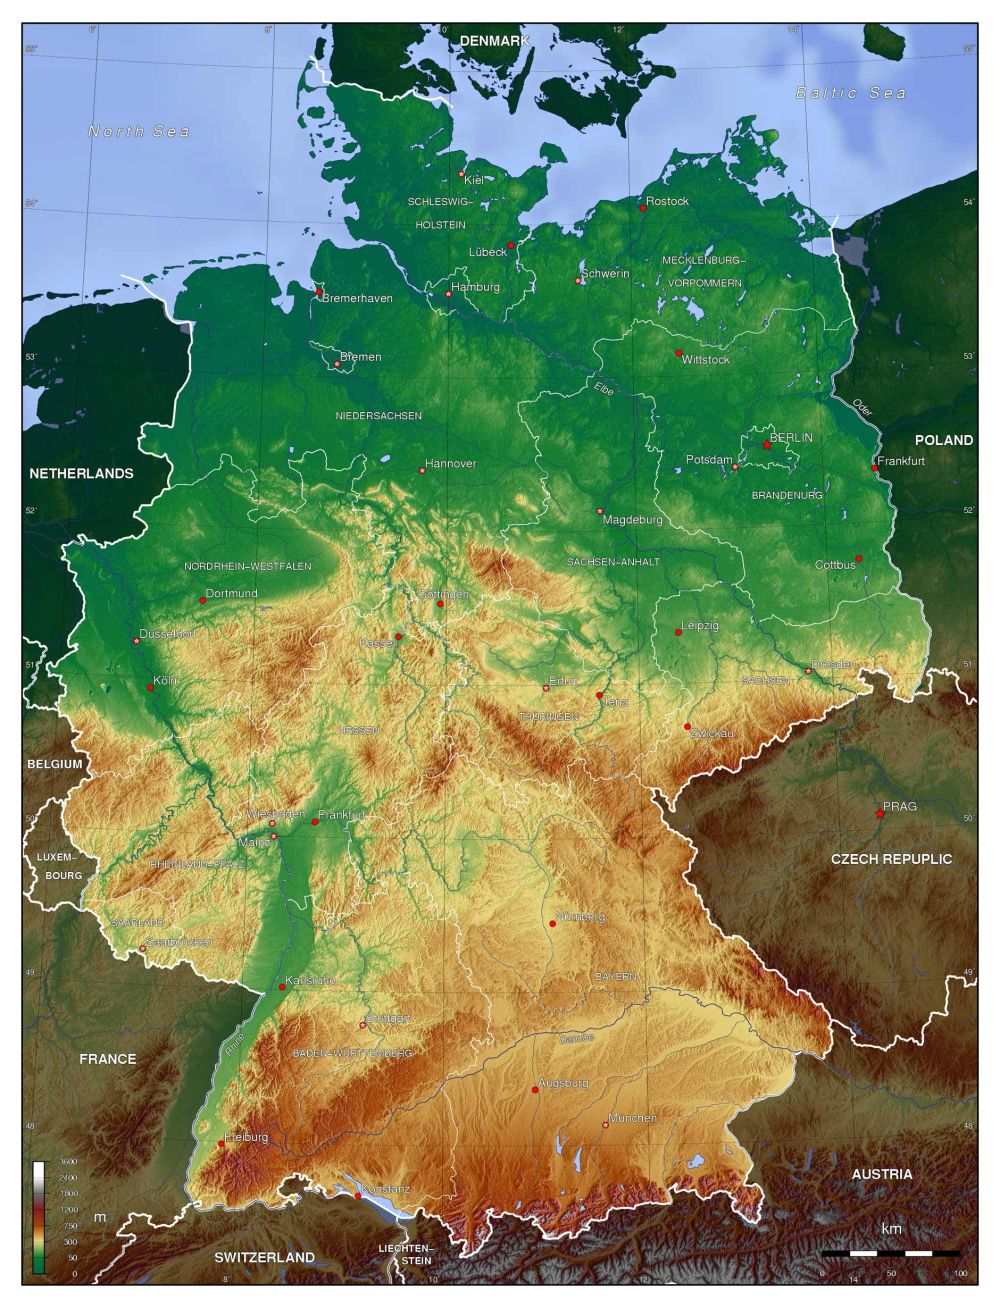 Hãy cùng chúng tôi đến với năm 2024 để khám phá bản đồ đất nước Đức mới nhất! Hãy tận hưởng những mùa thu và đông yên tĩnh, ngắm sơn cước và những thảm cỏ mênh mông, cùng với những thành phố đầy sức sống.